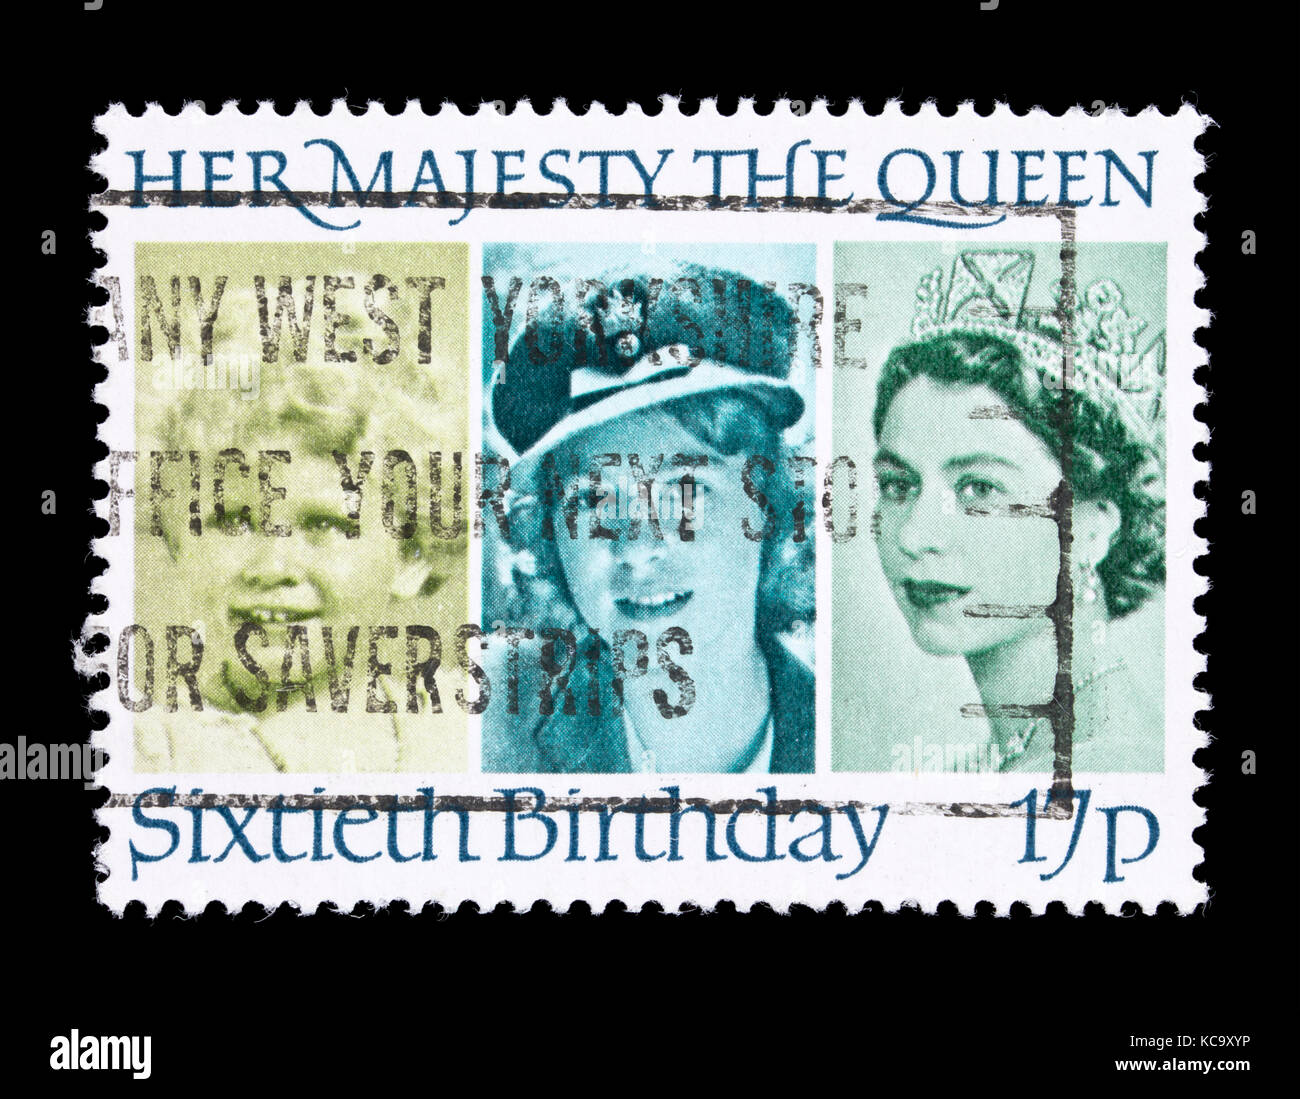 Timbre-poste à partir de la Grande-Bretagne représentant trois photos de la reine Elizabeth II à des âges différents, émis pour son jubilé d'argent. Banque D'Images